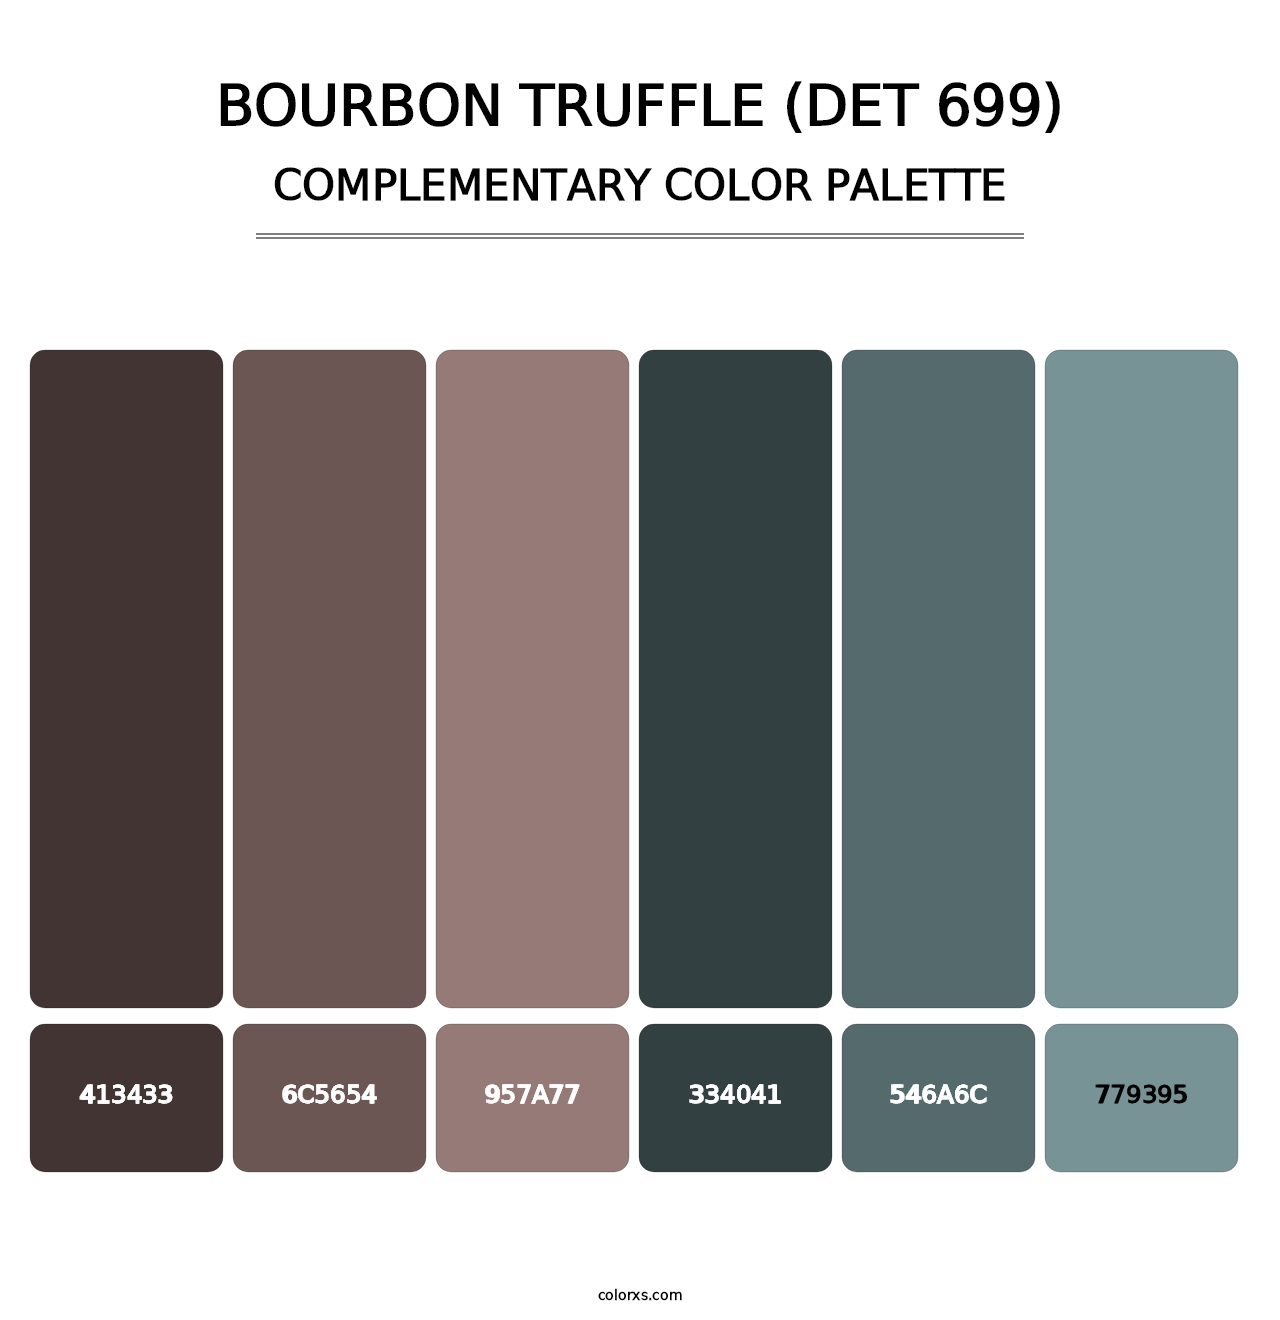 Bourbon Truffle (DET 699) - Complementary Color Palette